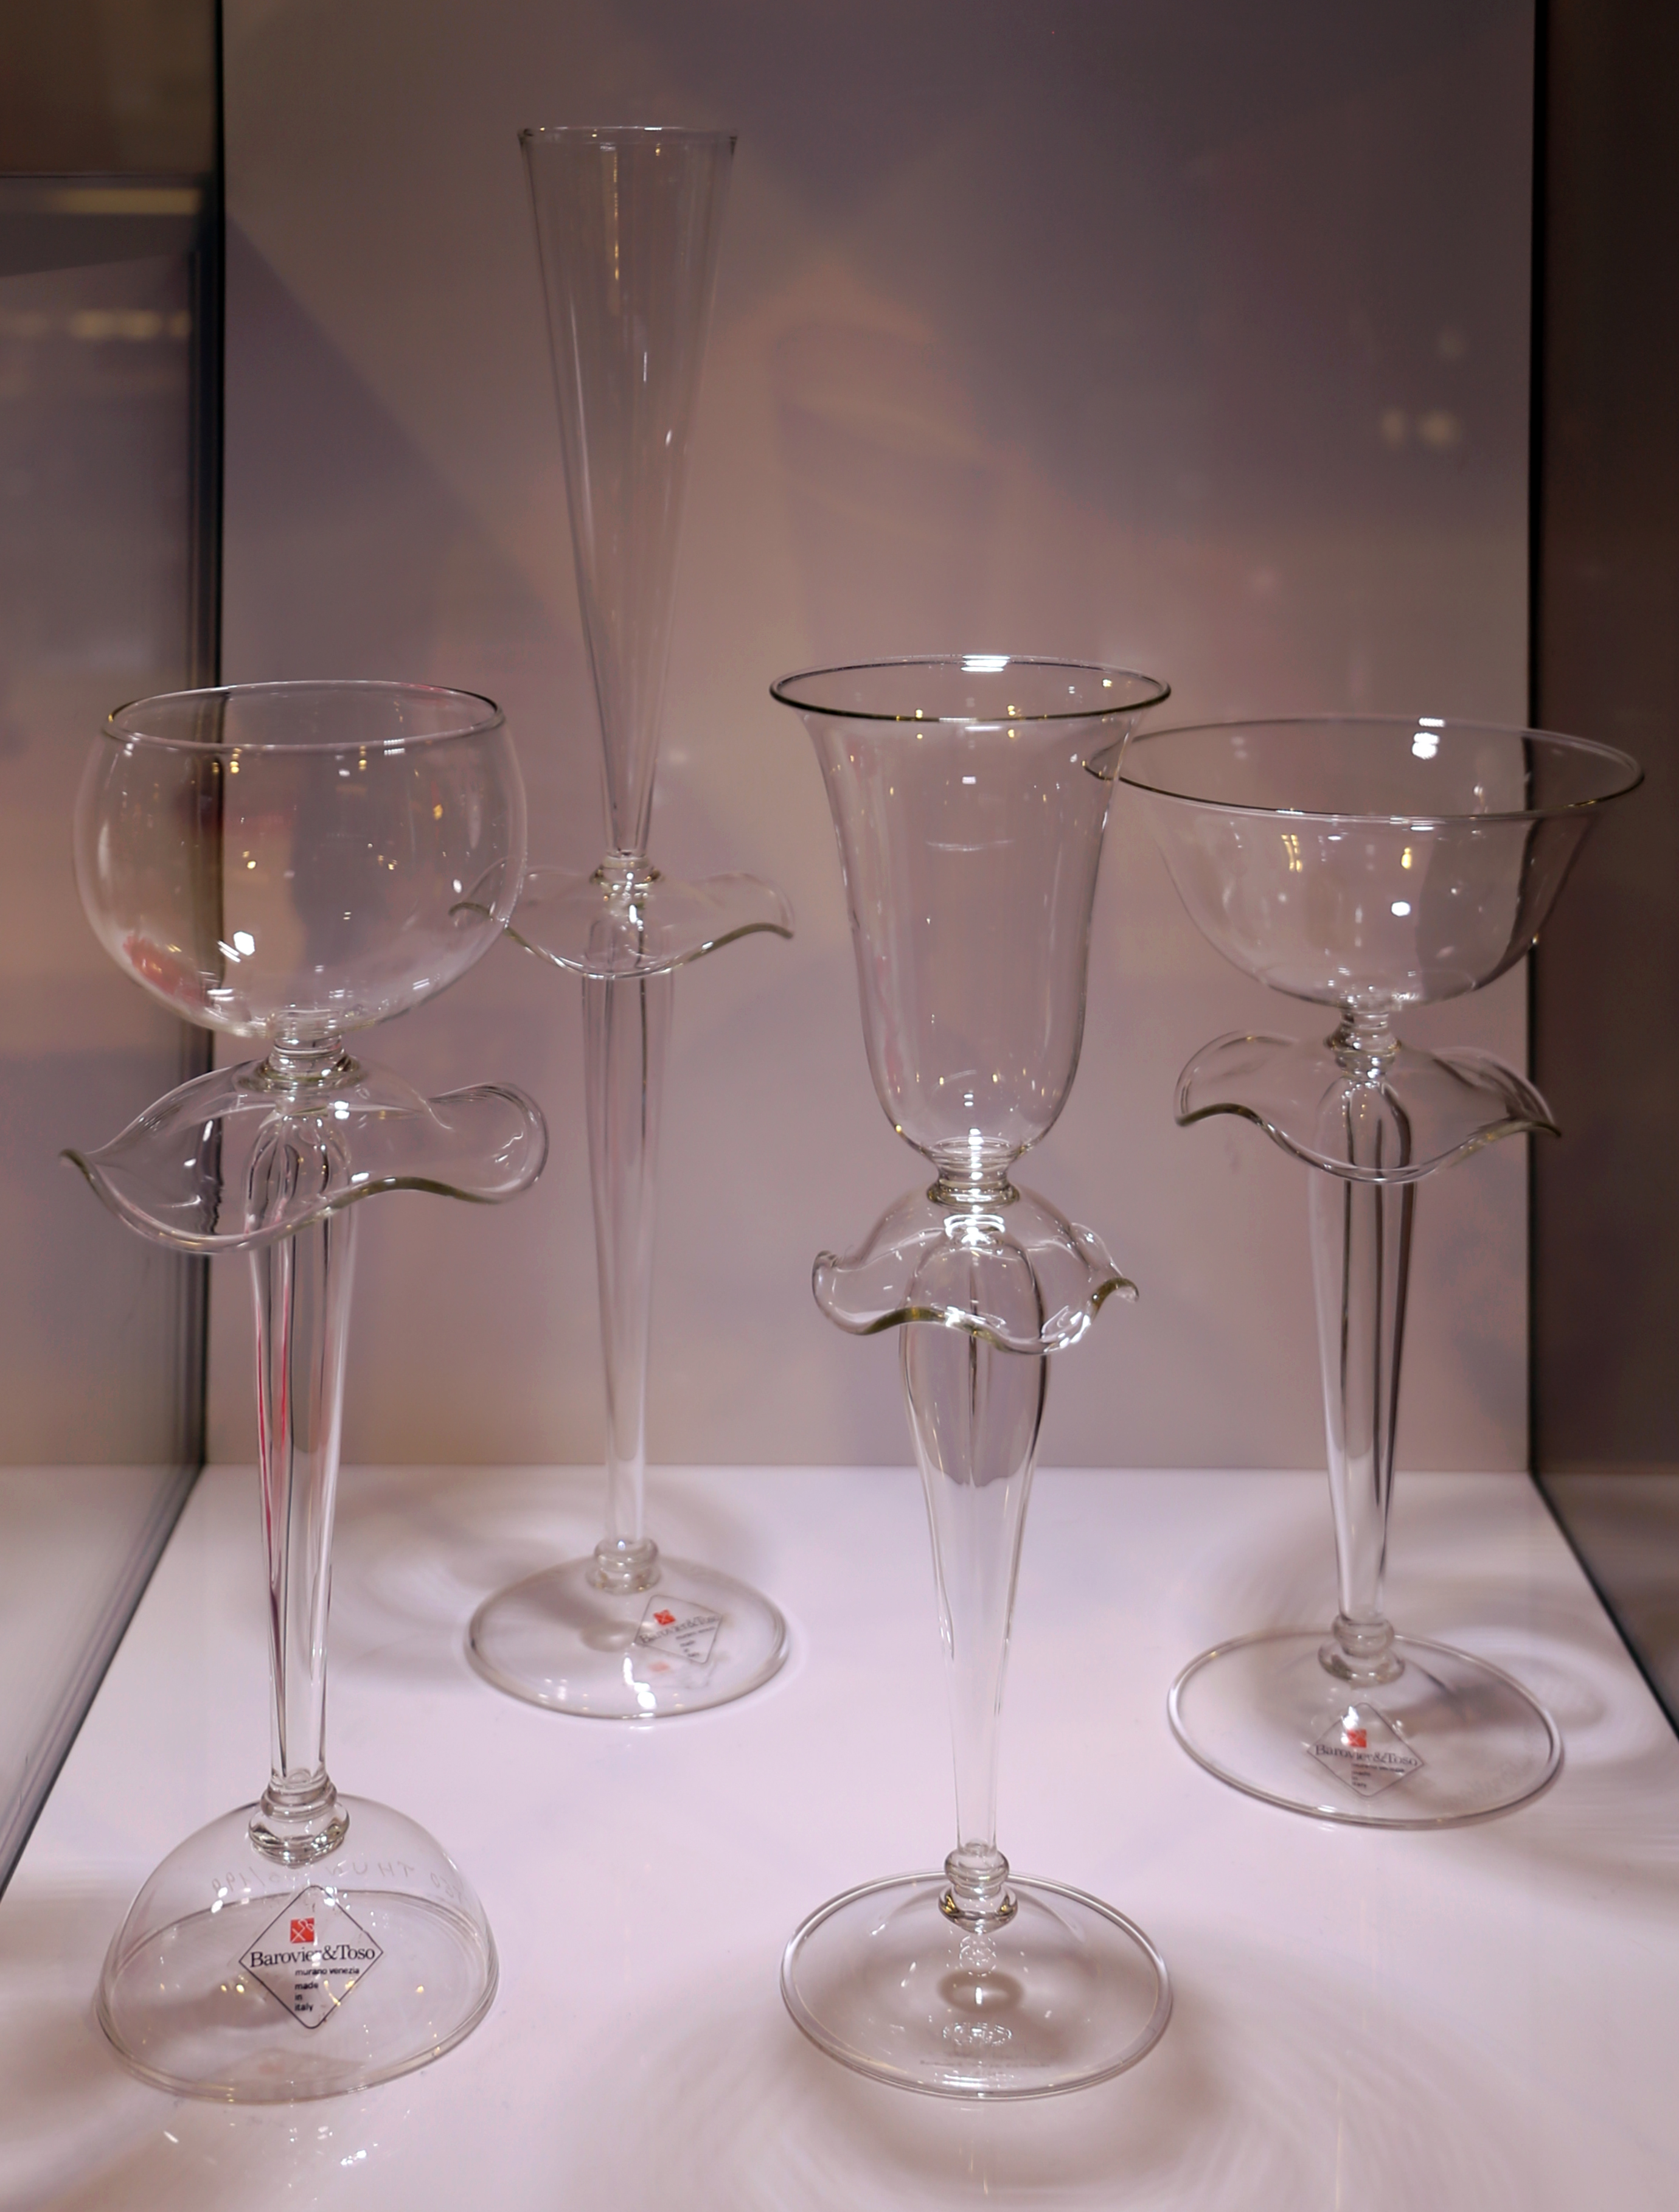 File:Matteo thun, bicchieri le ballerina fortunate, in vetro soffiato di  boemia, 1986.jpg - Wikimedia Commons